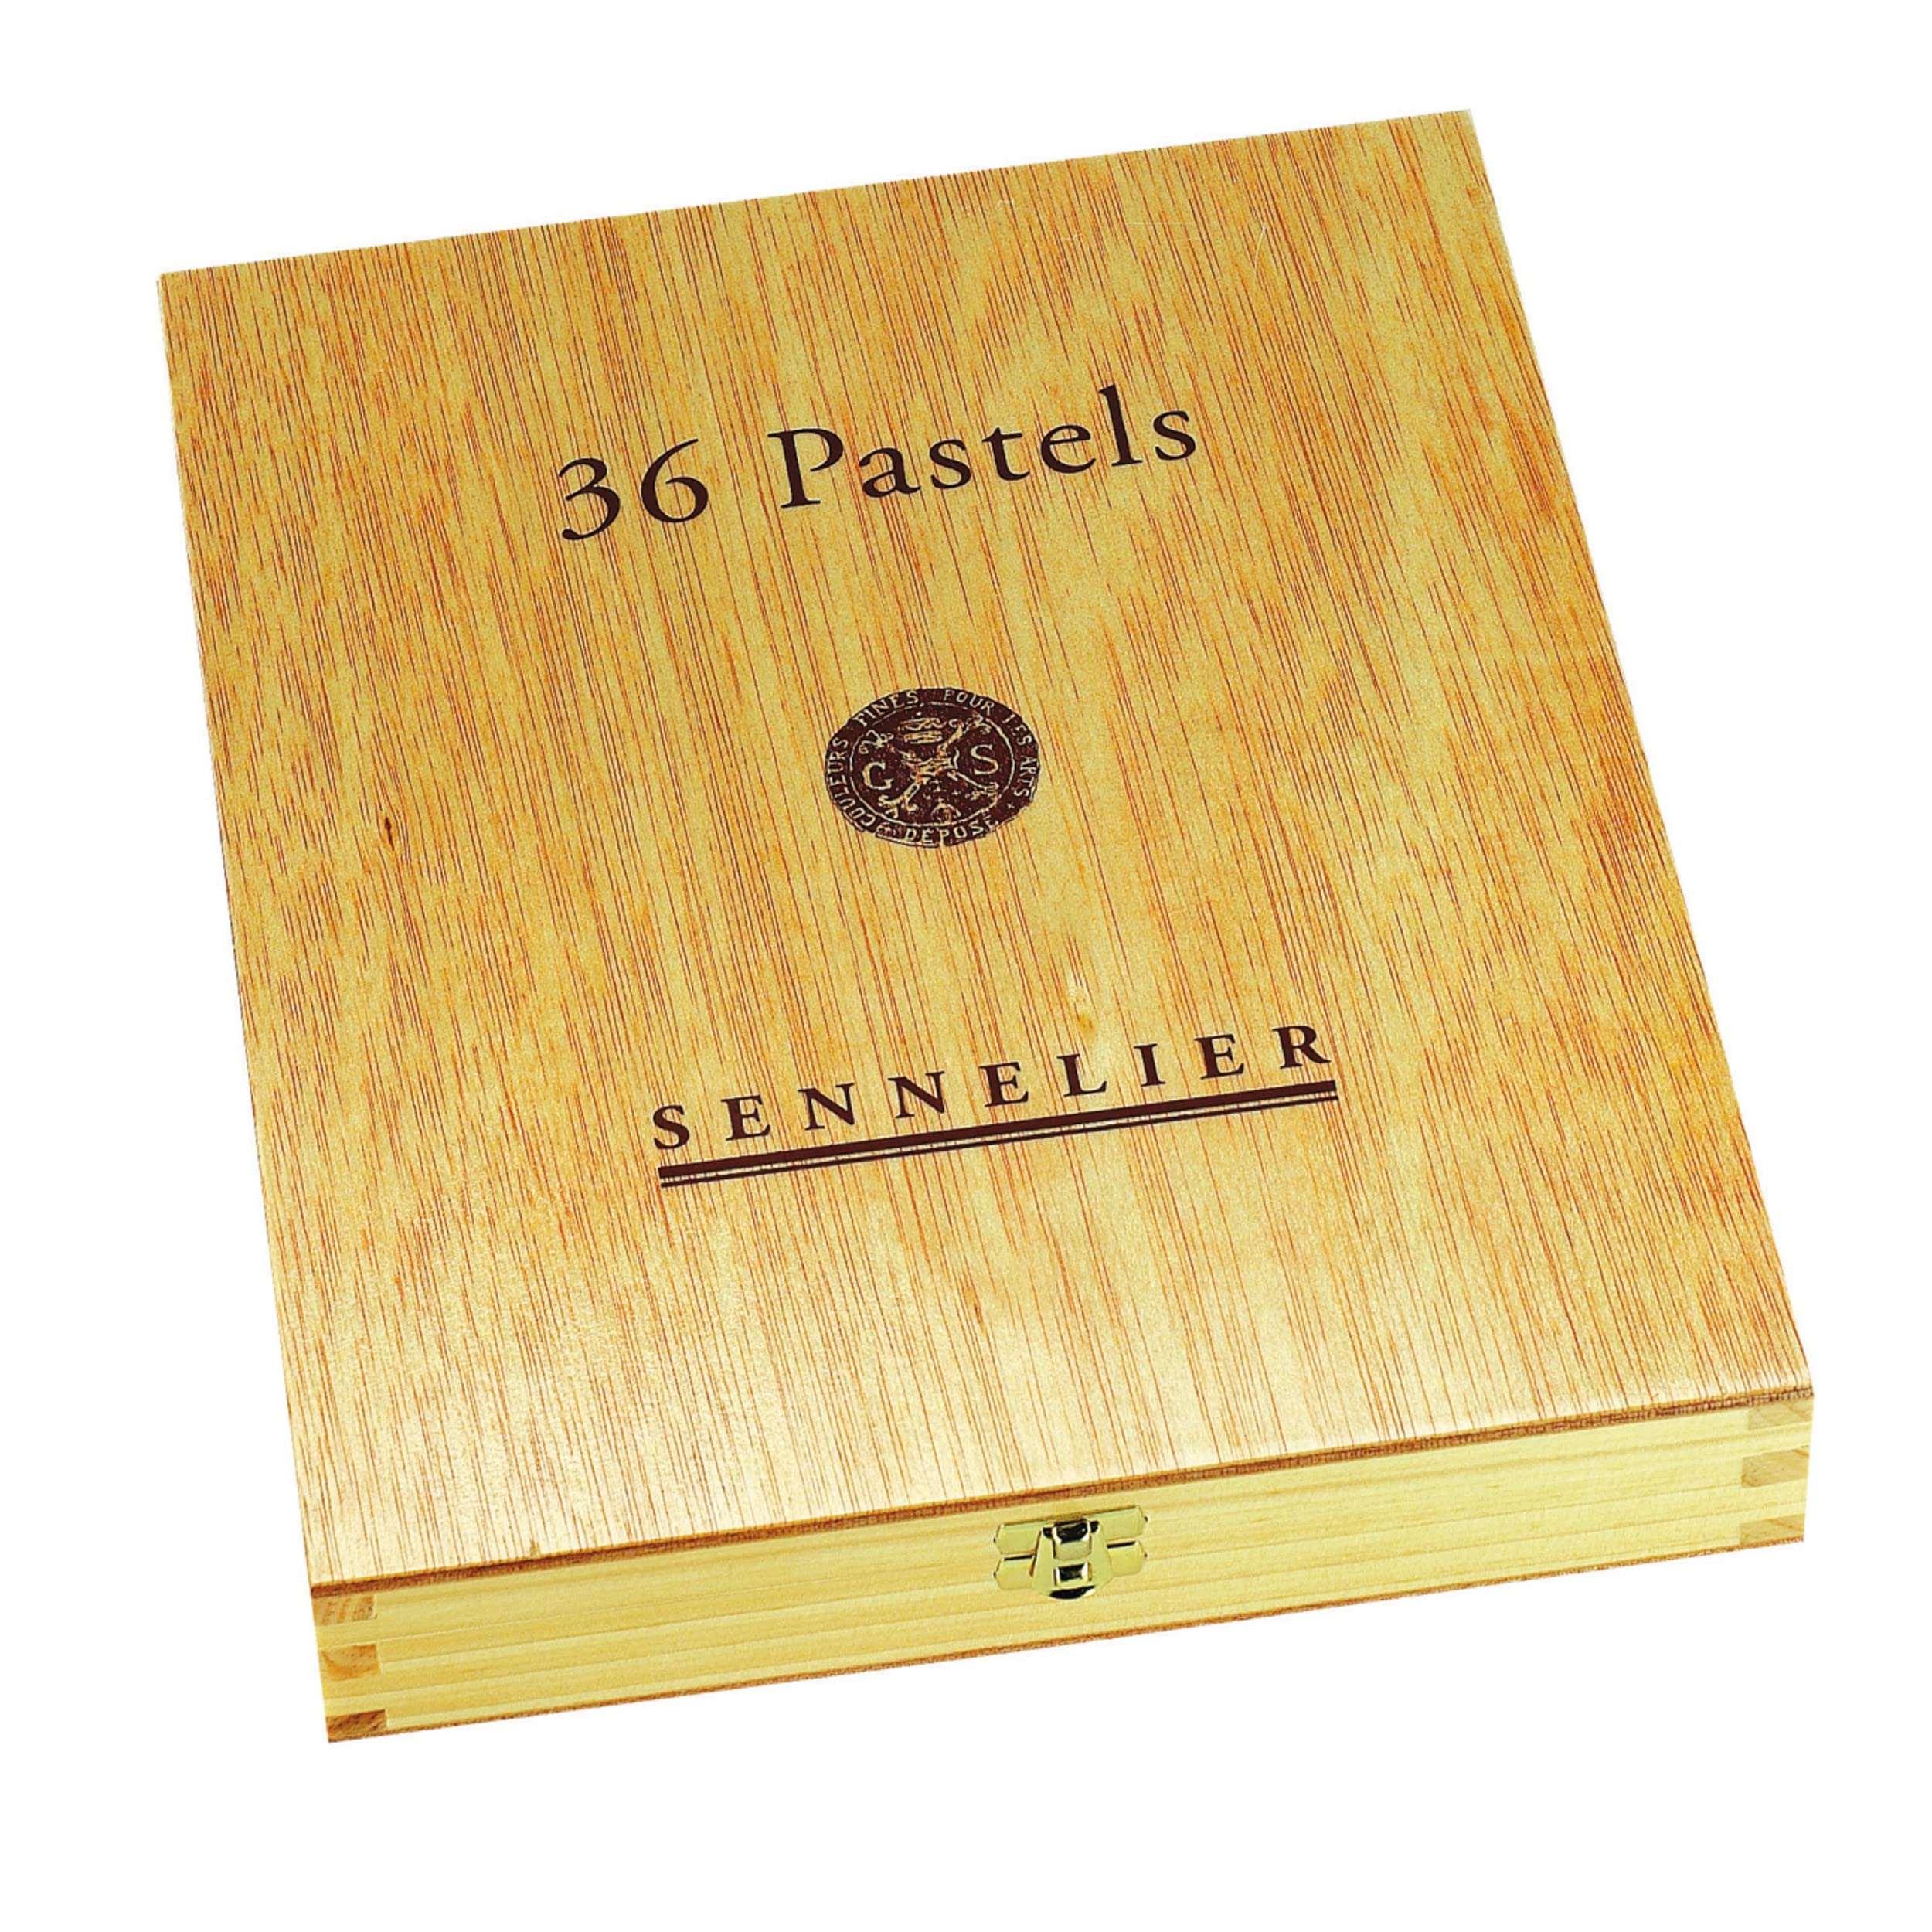 Sennelier Extraweiches Pastell-Fullstick-Set, 36 Farben, mehrfarbig